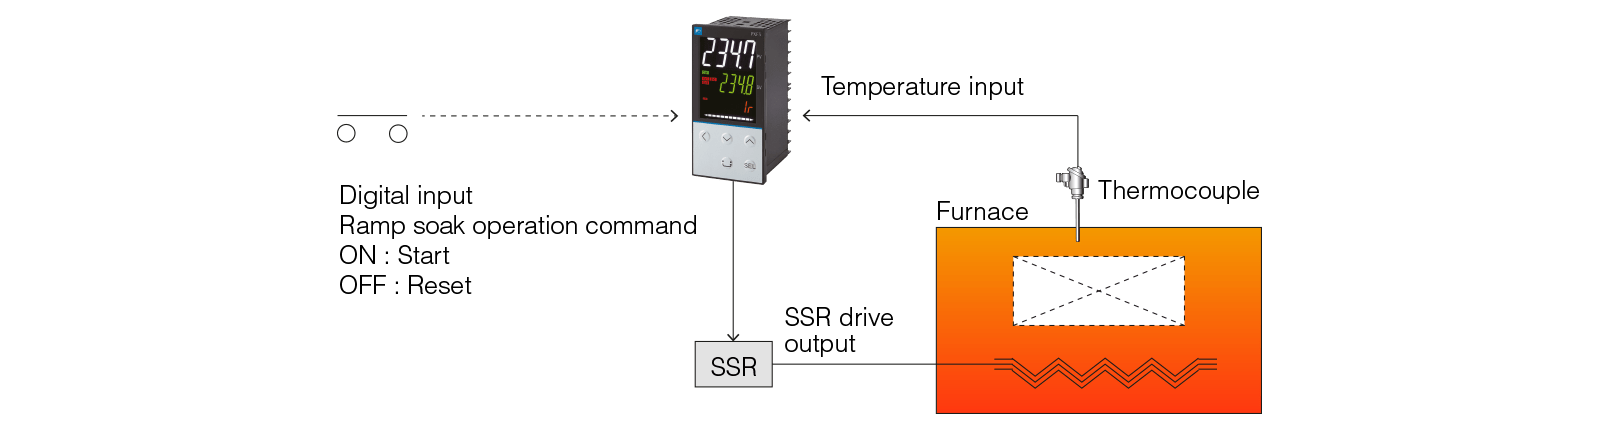 البرمجة وتنظيم درجة الحرارة